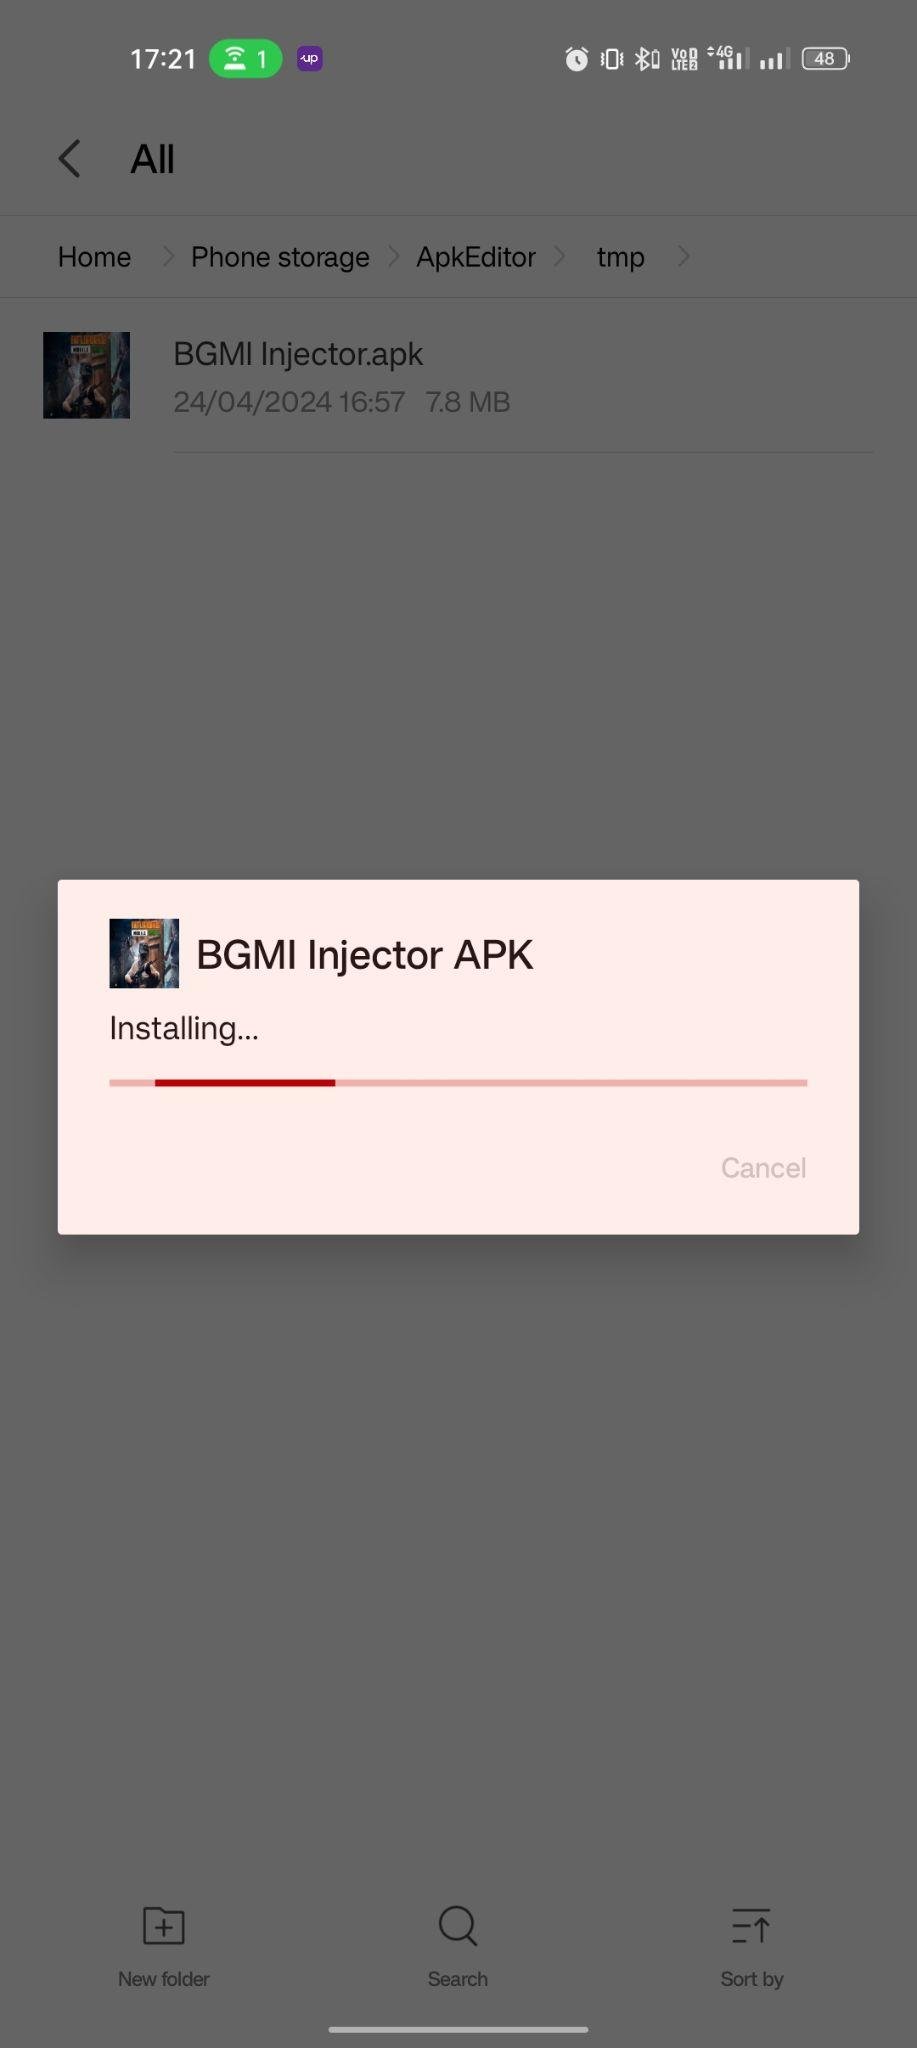 BGMI Injector apk installing